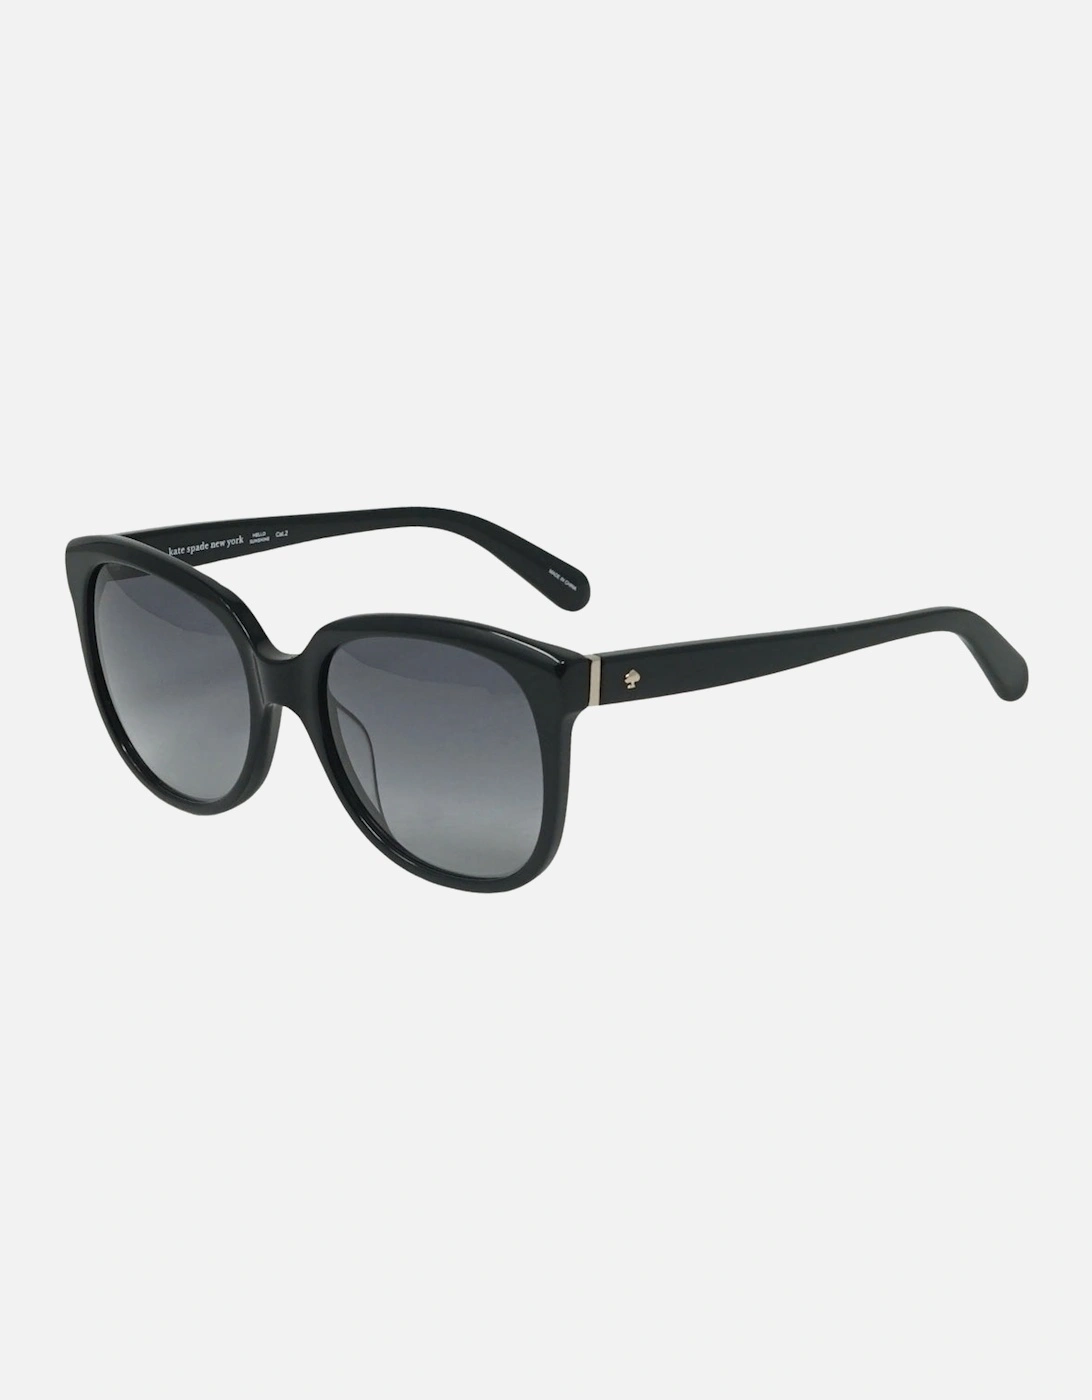 Bayleigh 0807 00 Black Sunglasses